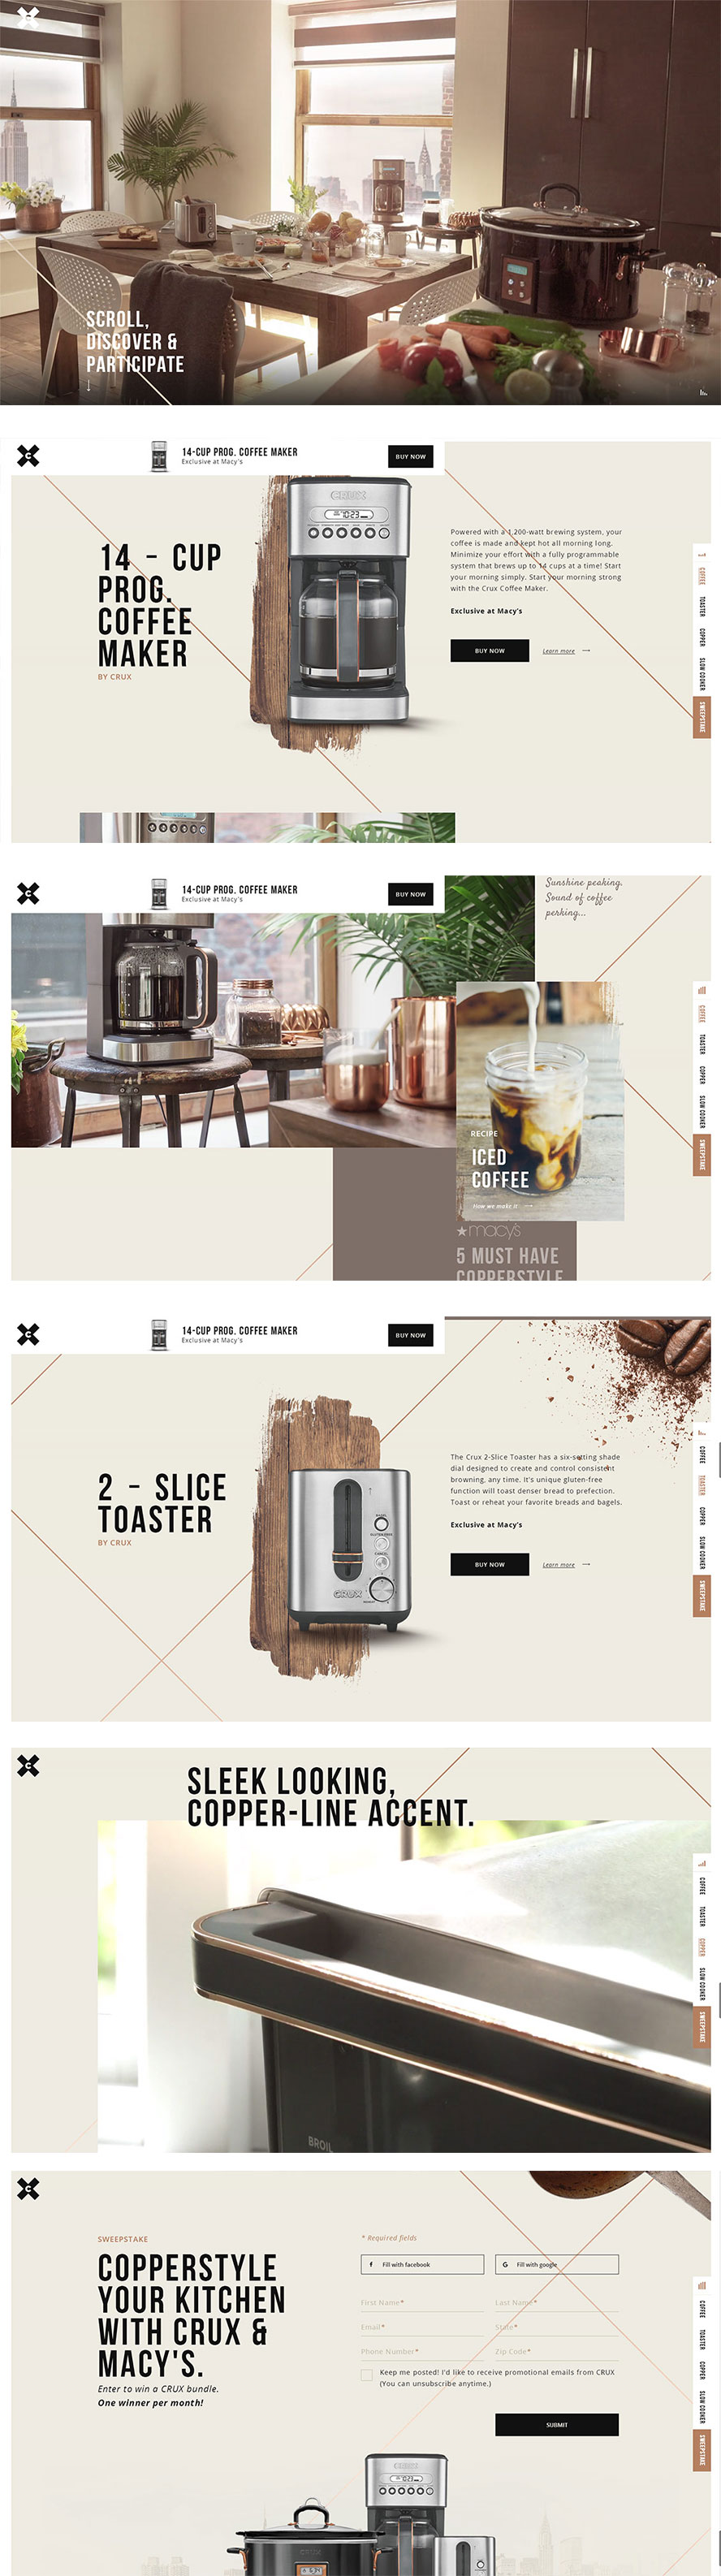 crux咖啡机产品网站设计